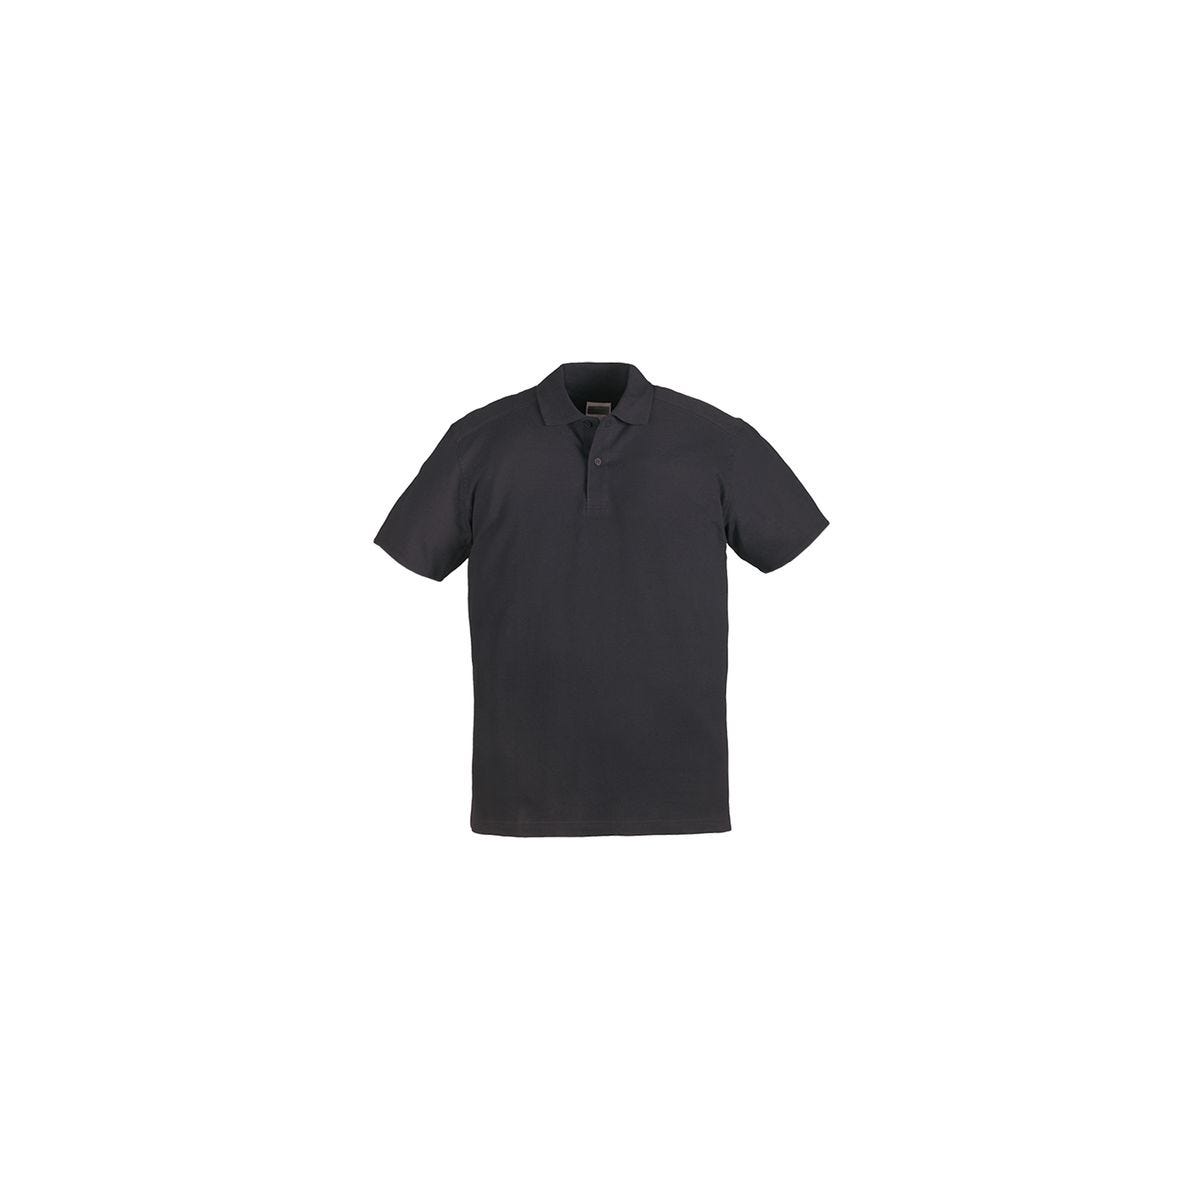 SAFARI Polo MC noir, 100% coton, 220g/m² - COVERGUARD - Taille 2XL 0